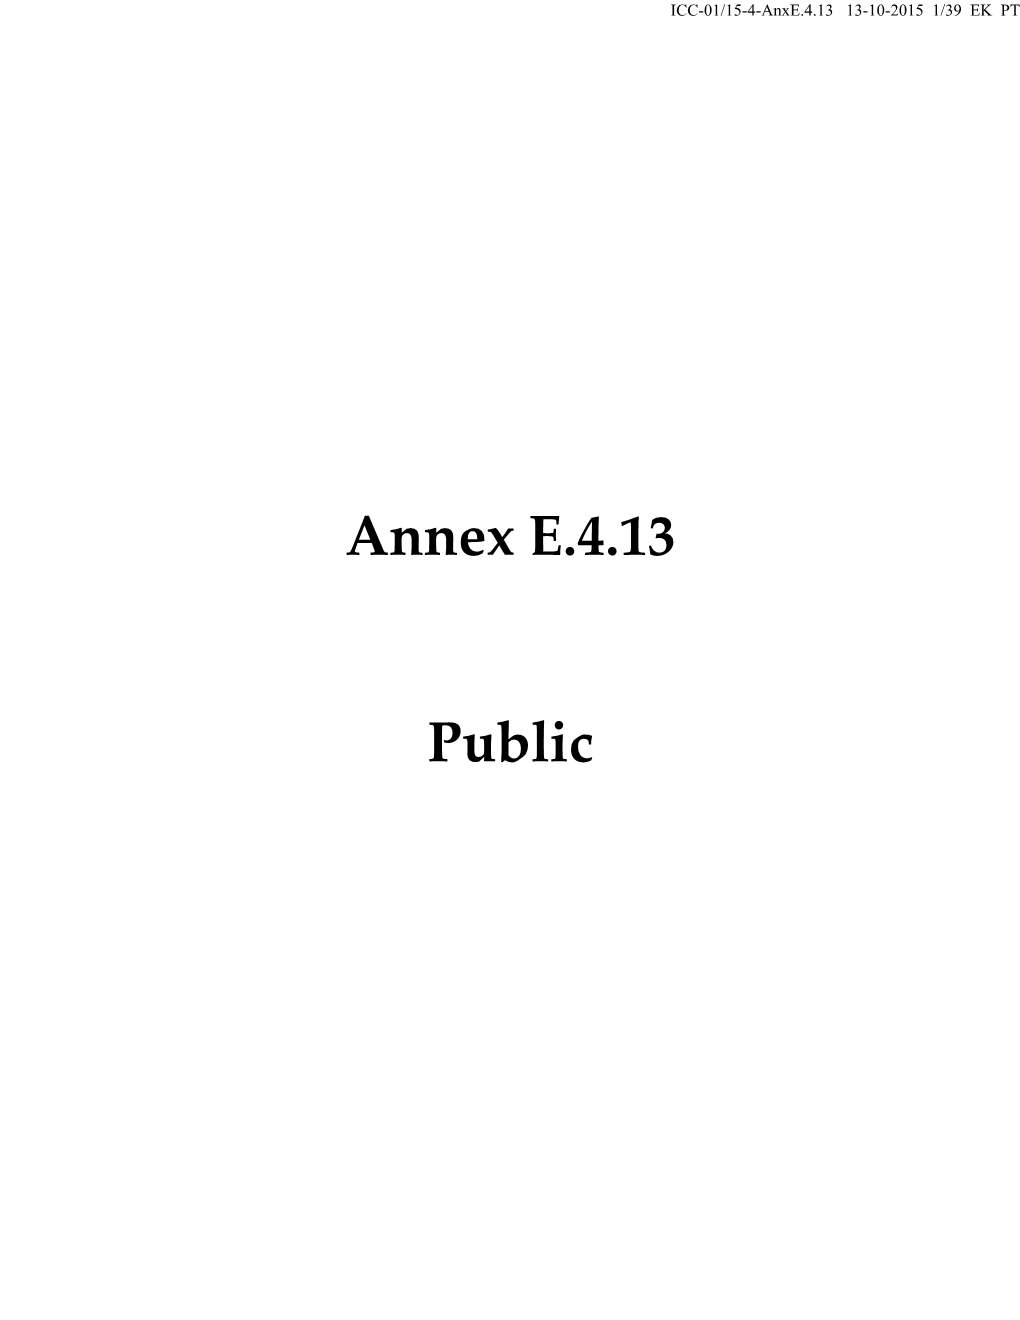 Annex E.4.13 Public